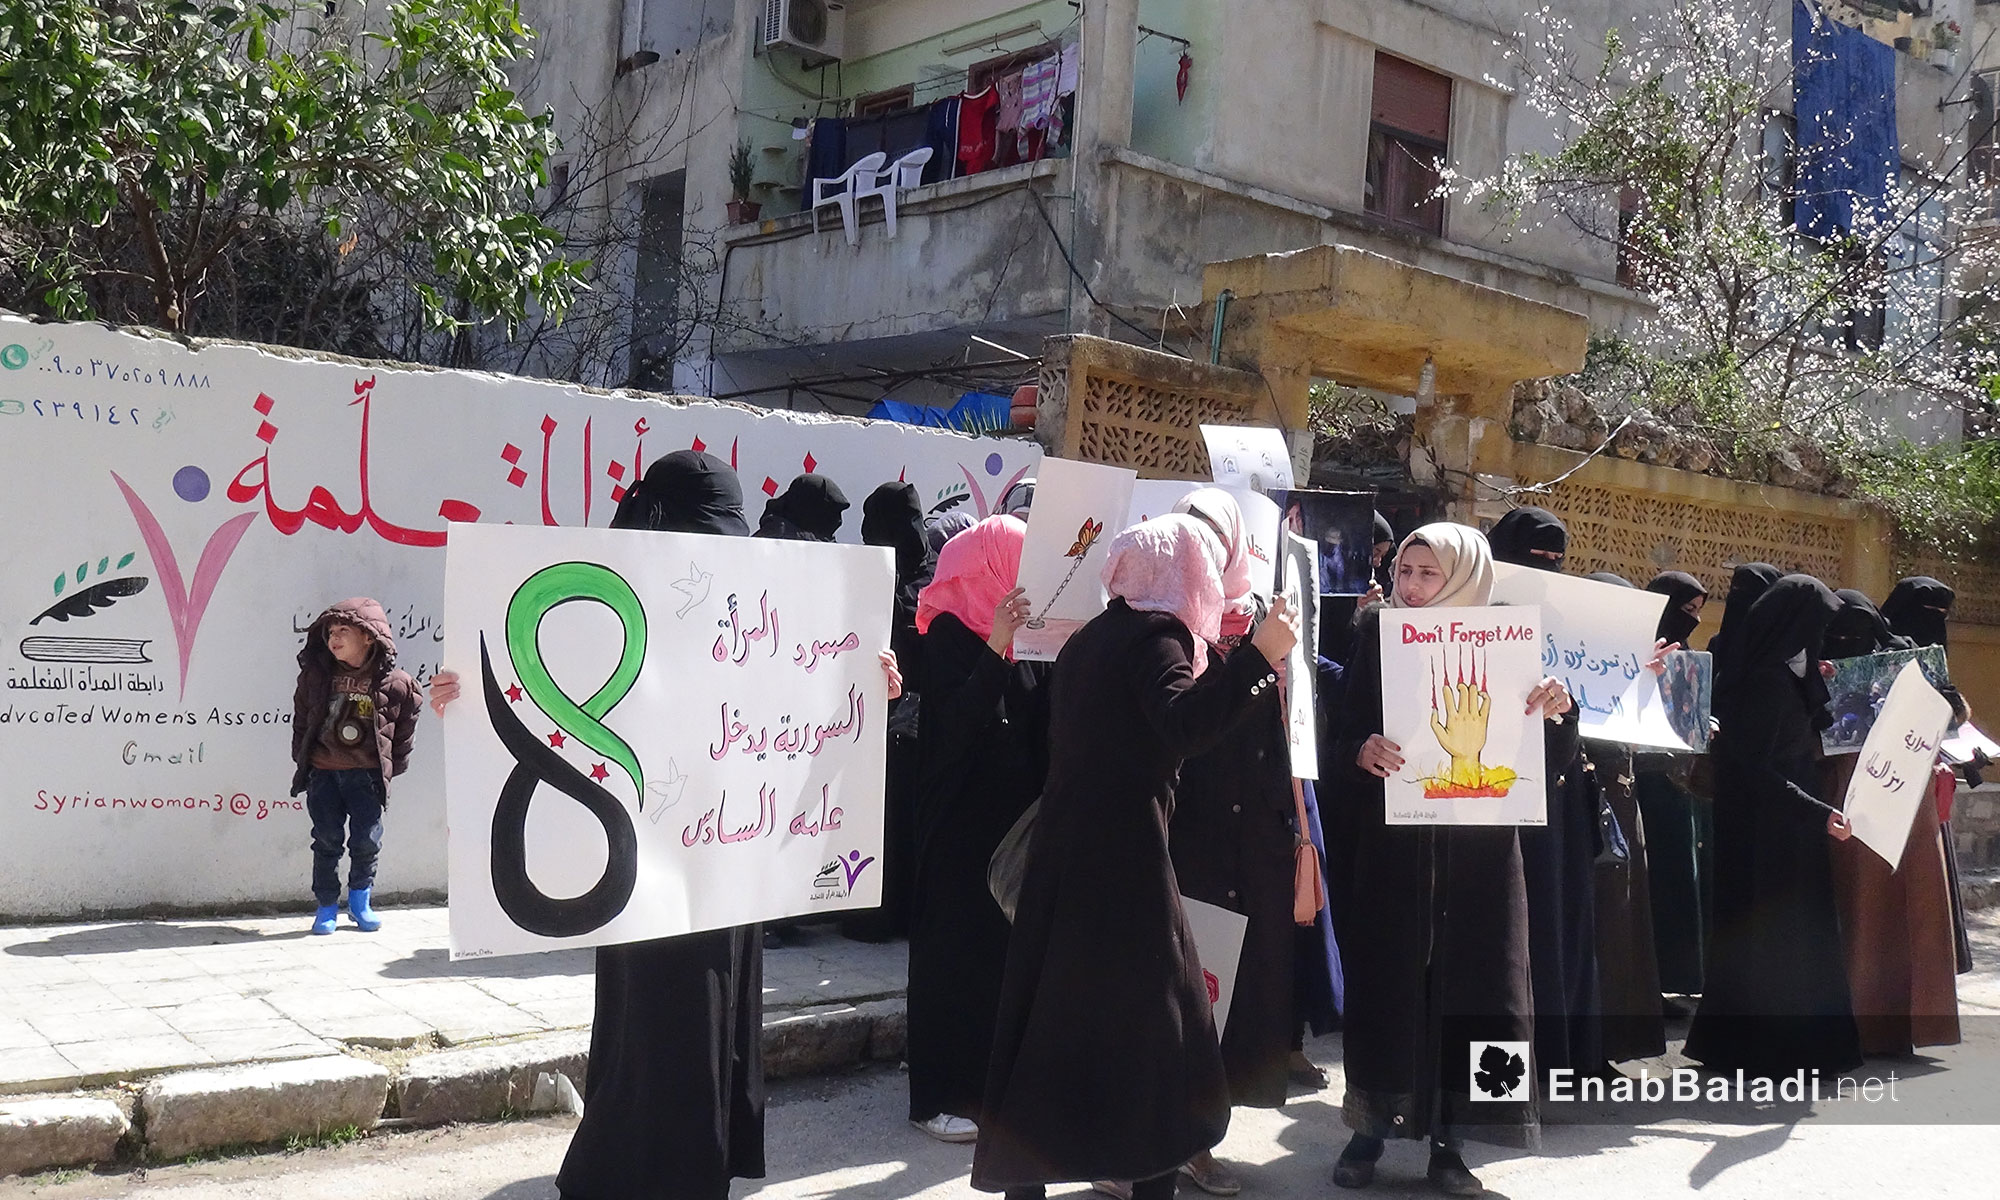 وقفة تضامنية للتذكير بالمعتقلات في سجون النظام في يوم المرأة العالمي - "رابطة المرأة المتعلمة" إدلب - 8 آذار 2017 (عنب بلدي)